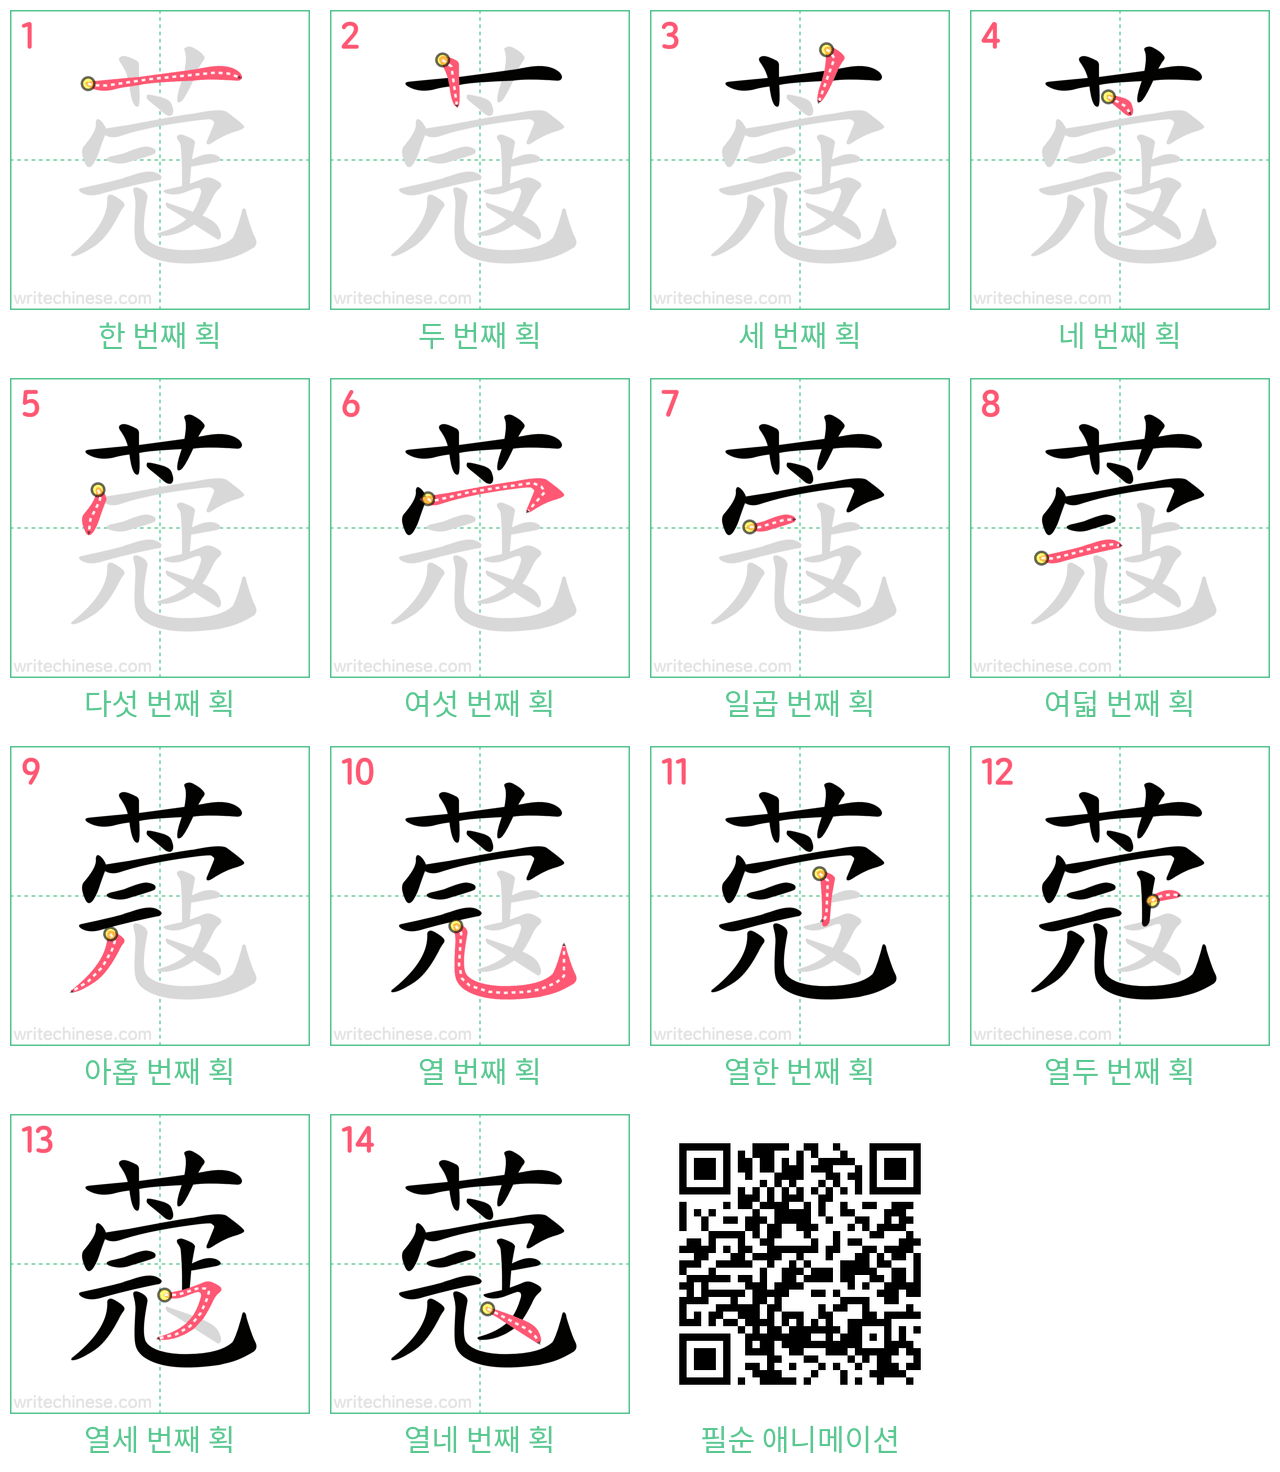 蔻 step-by-step stroke order diagrams